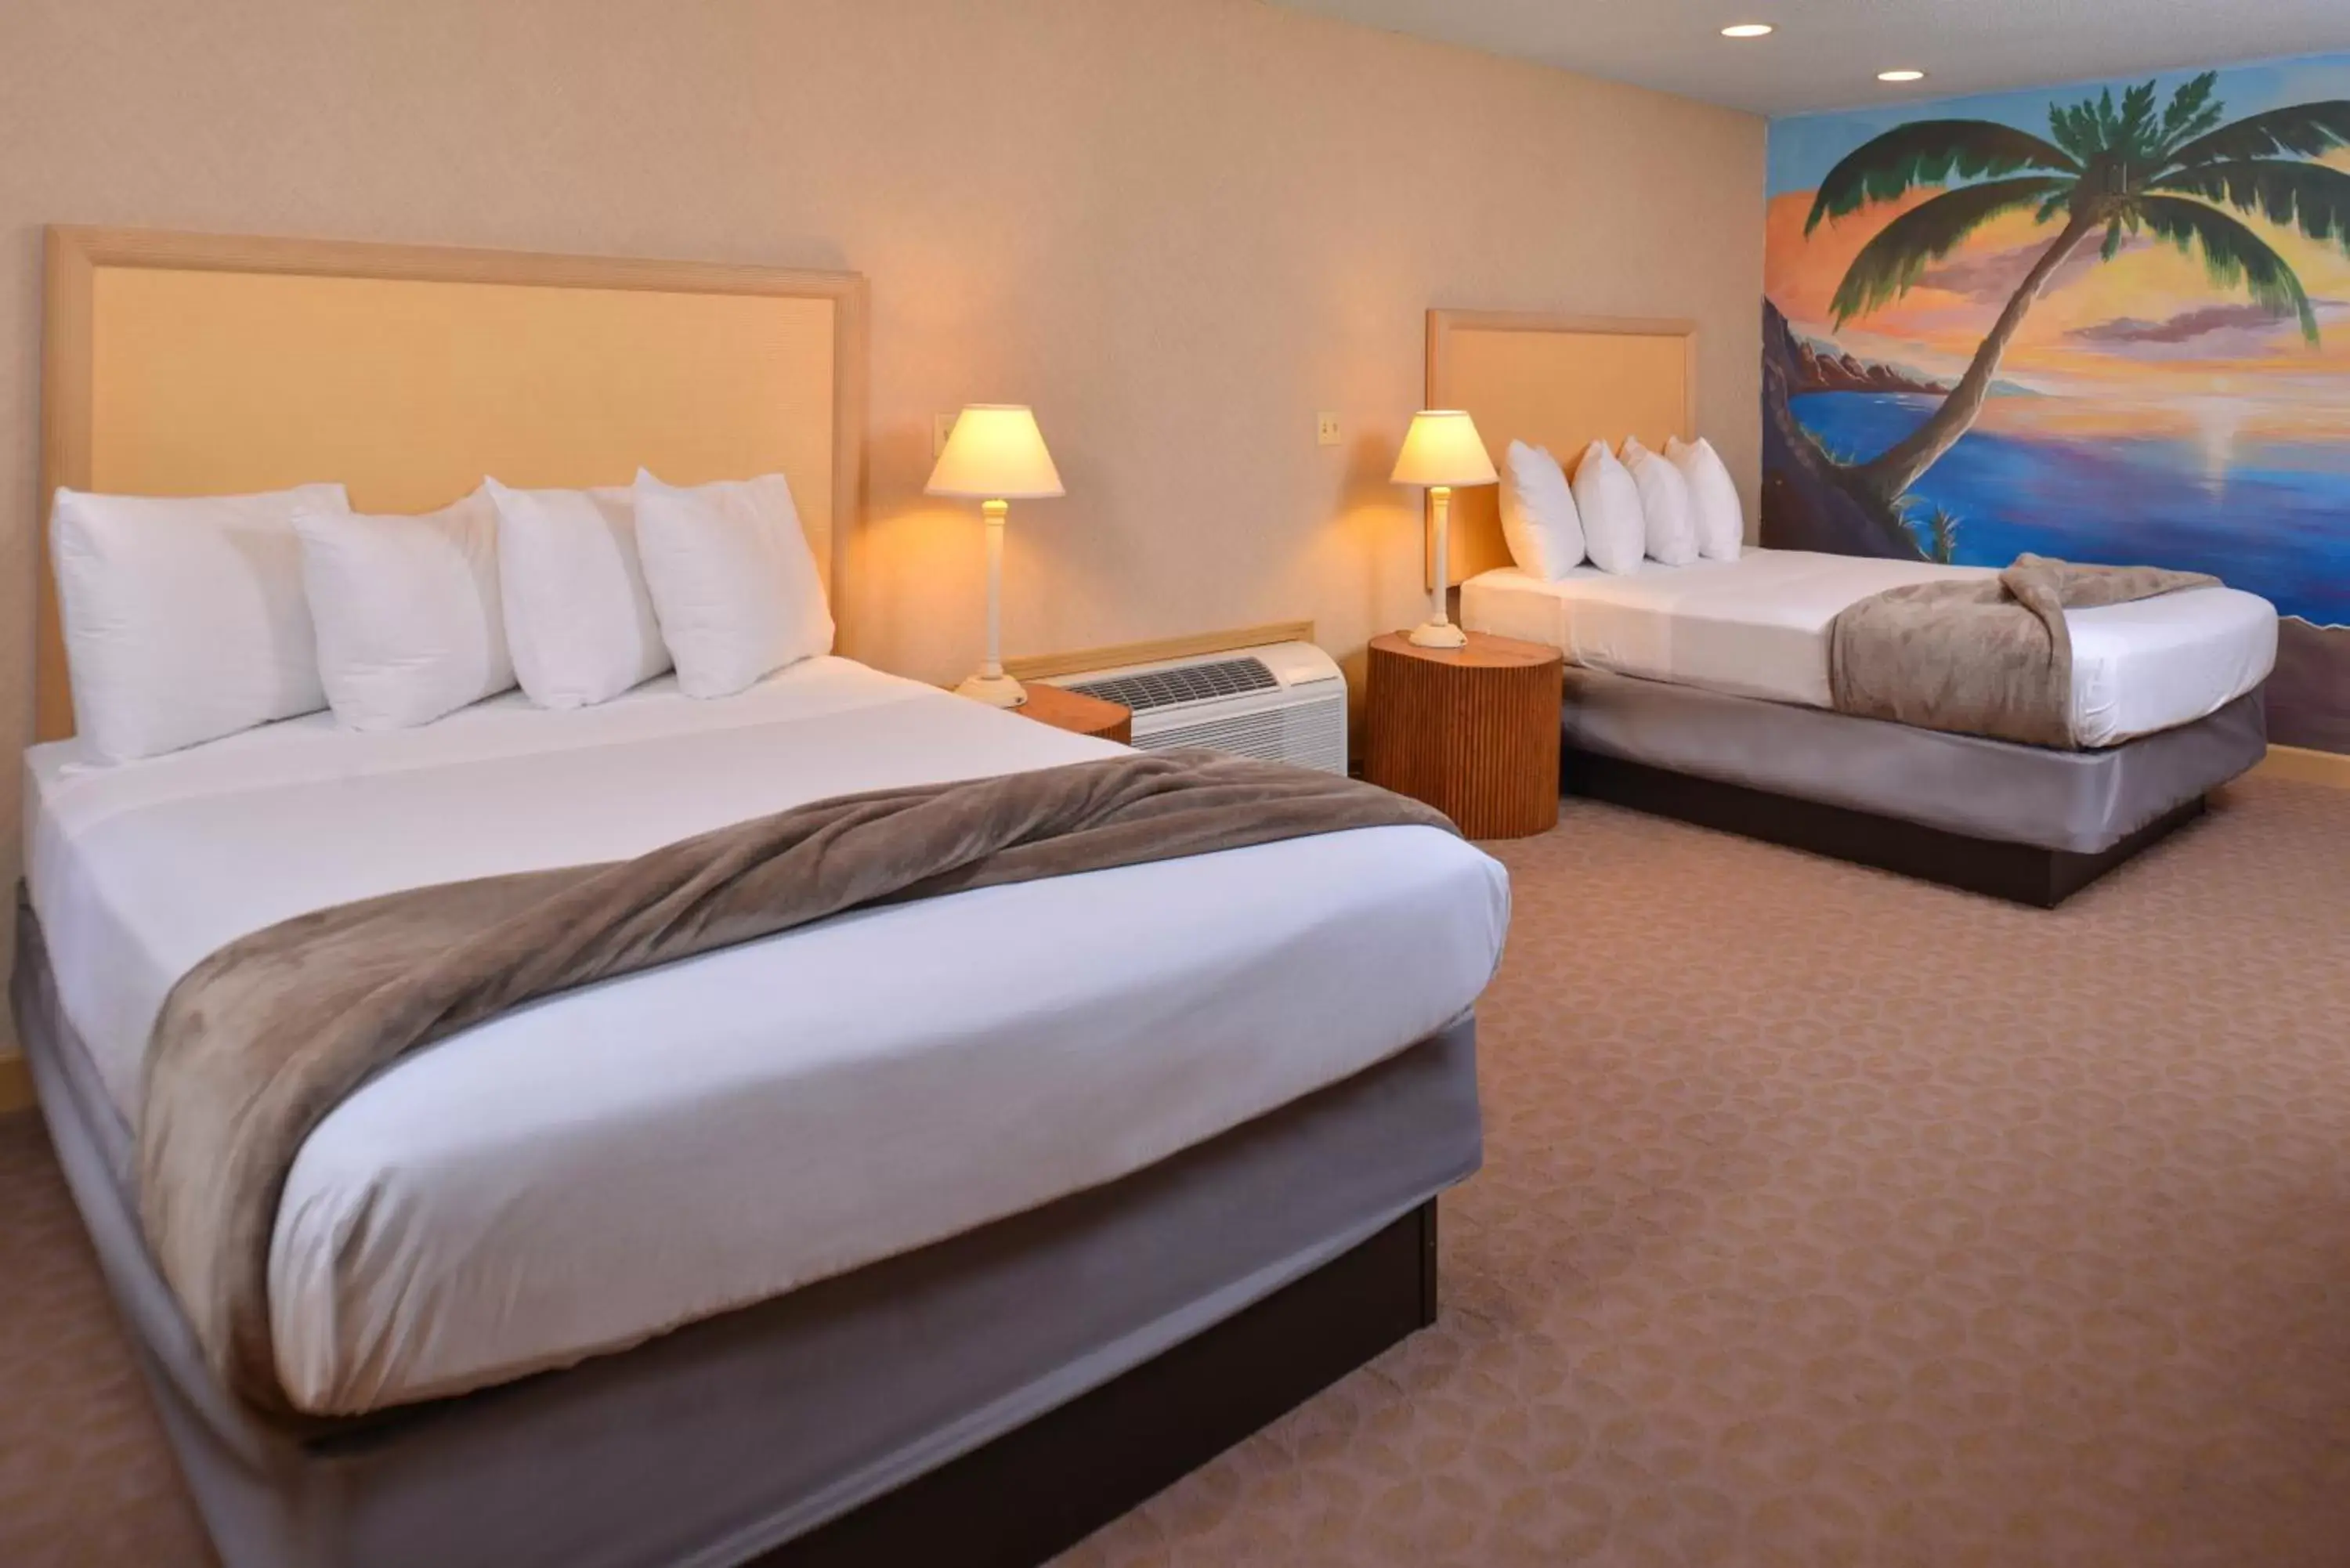 Bedroom, Room Photo in Atlantis Family Waterpark Hotel